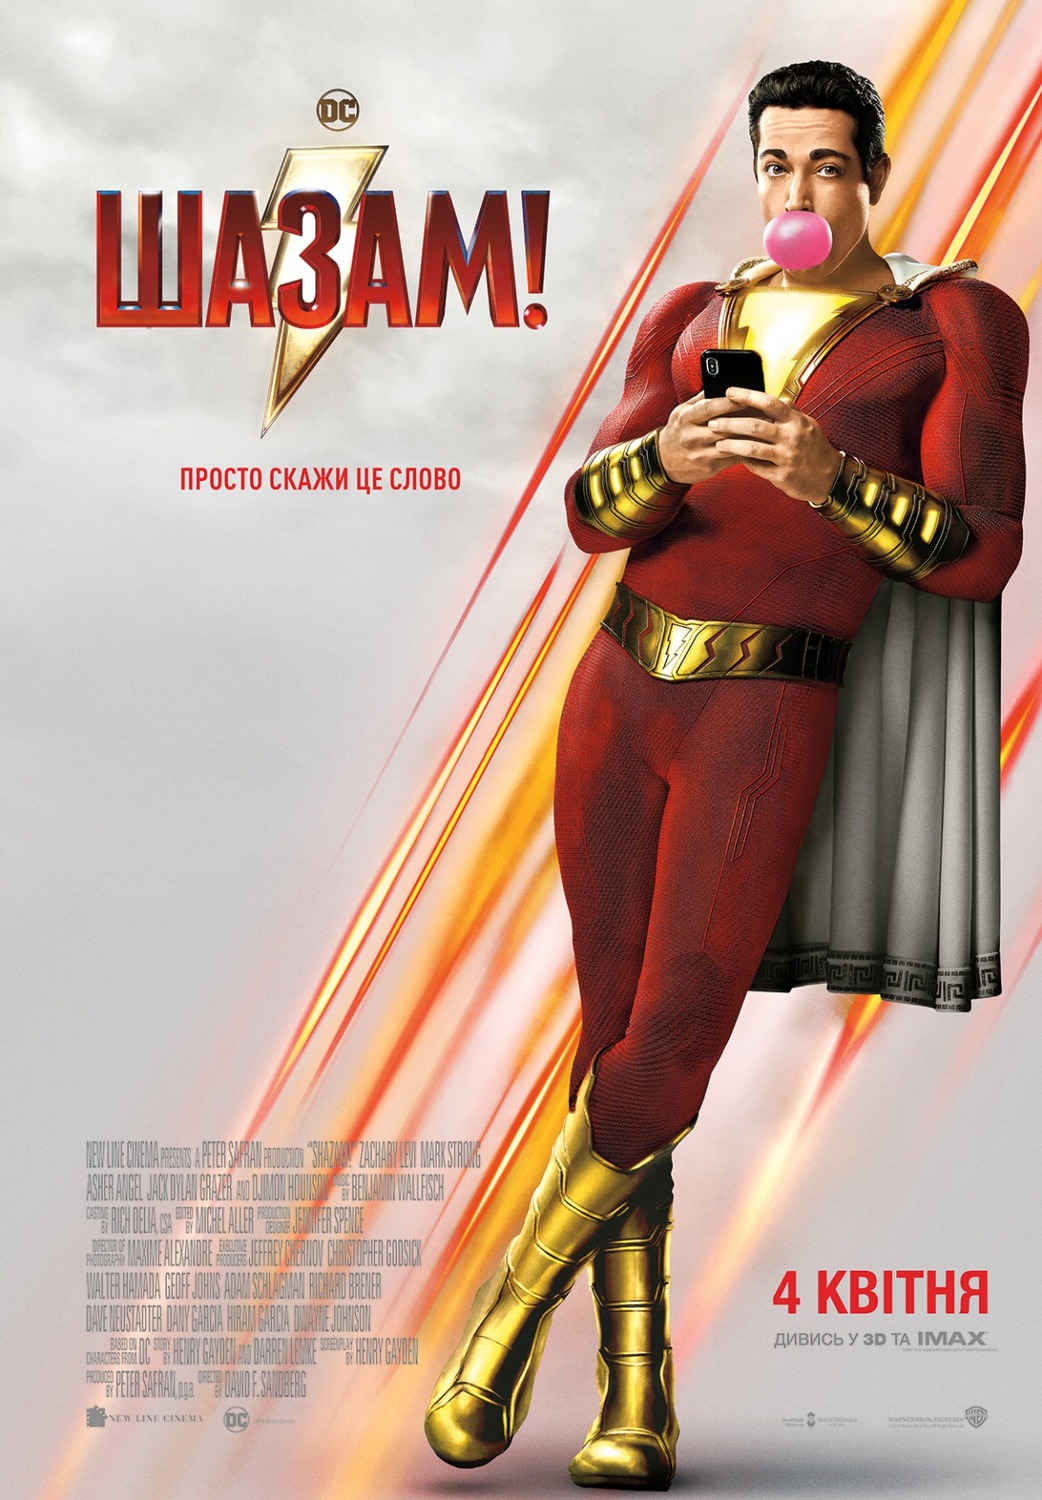 Extra Large Movie Poster Image for Shazam! (#10 of 10)